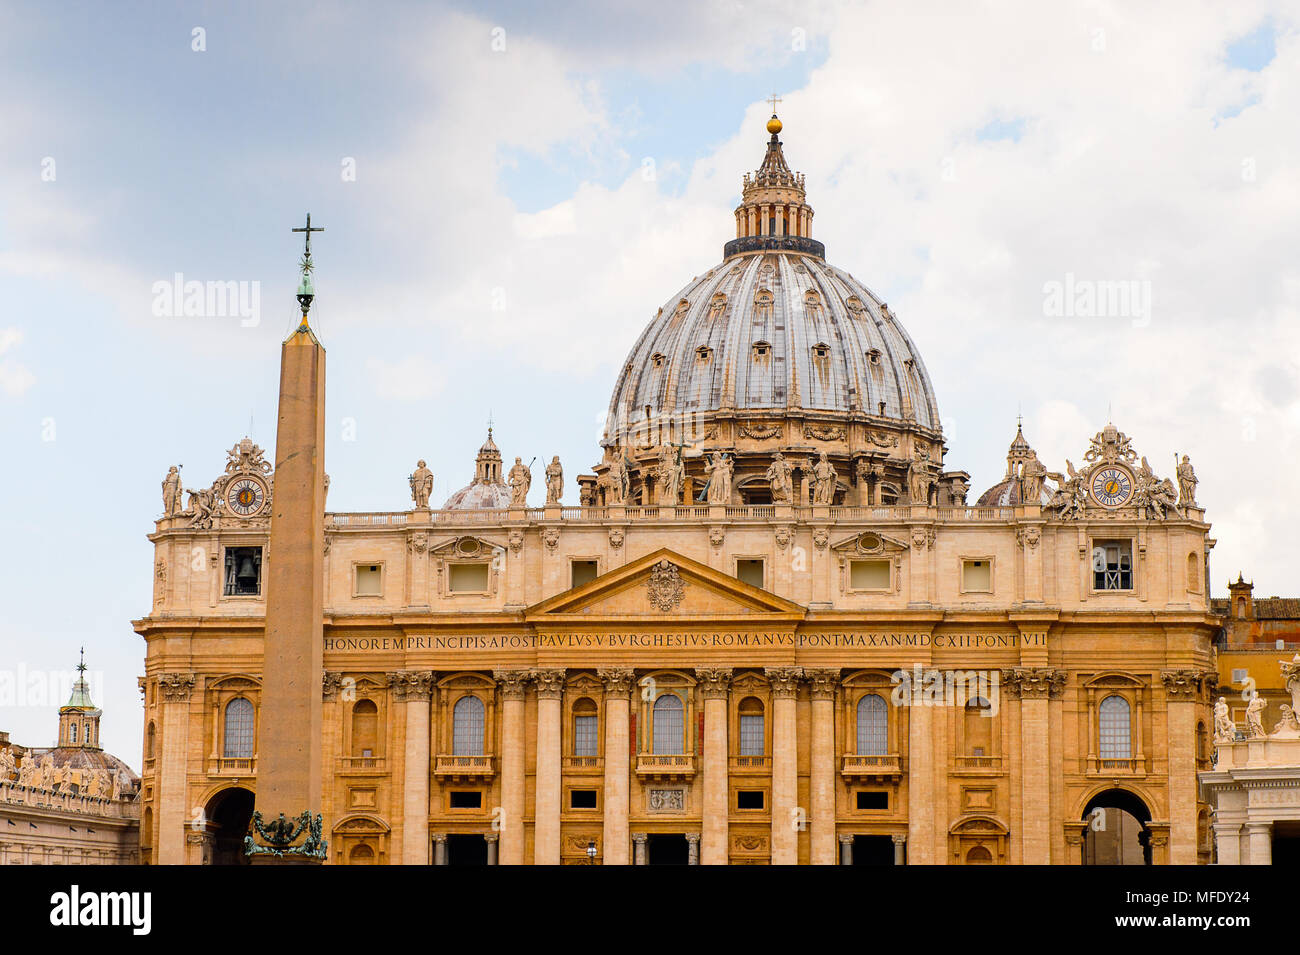 Der Dom St. Peter (Vatikan, Rom, Italien), Architektur der Renaissance. Eine der Popualr touristischen Destinationen in Rom Stockfoto